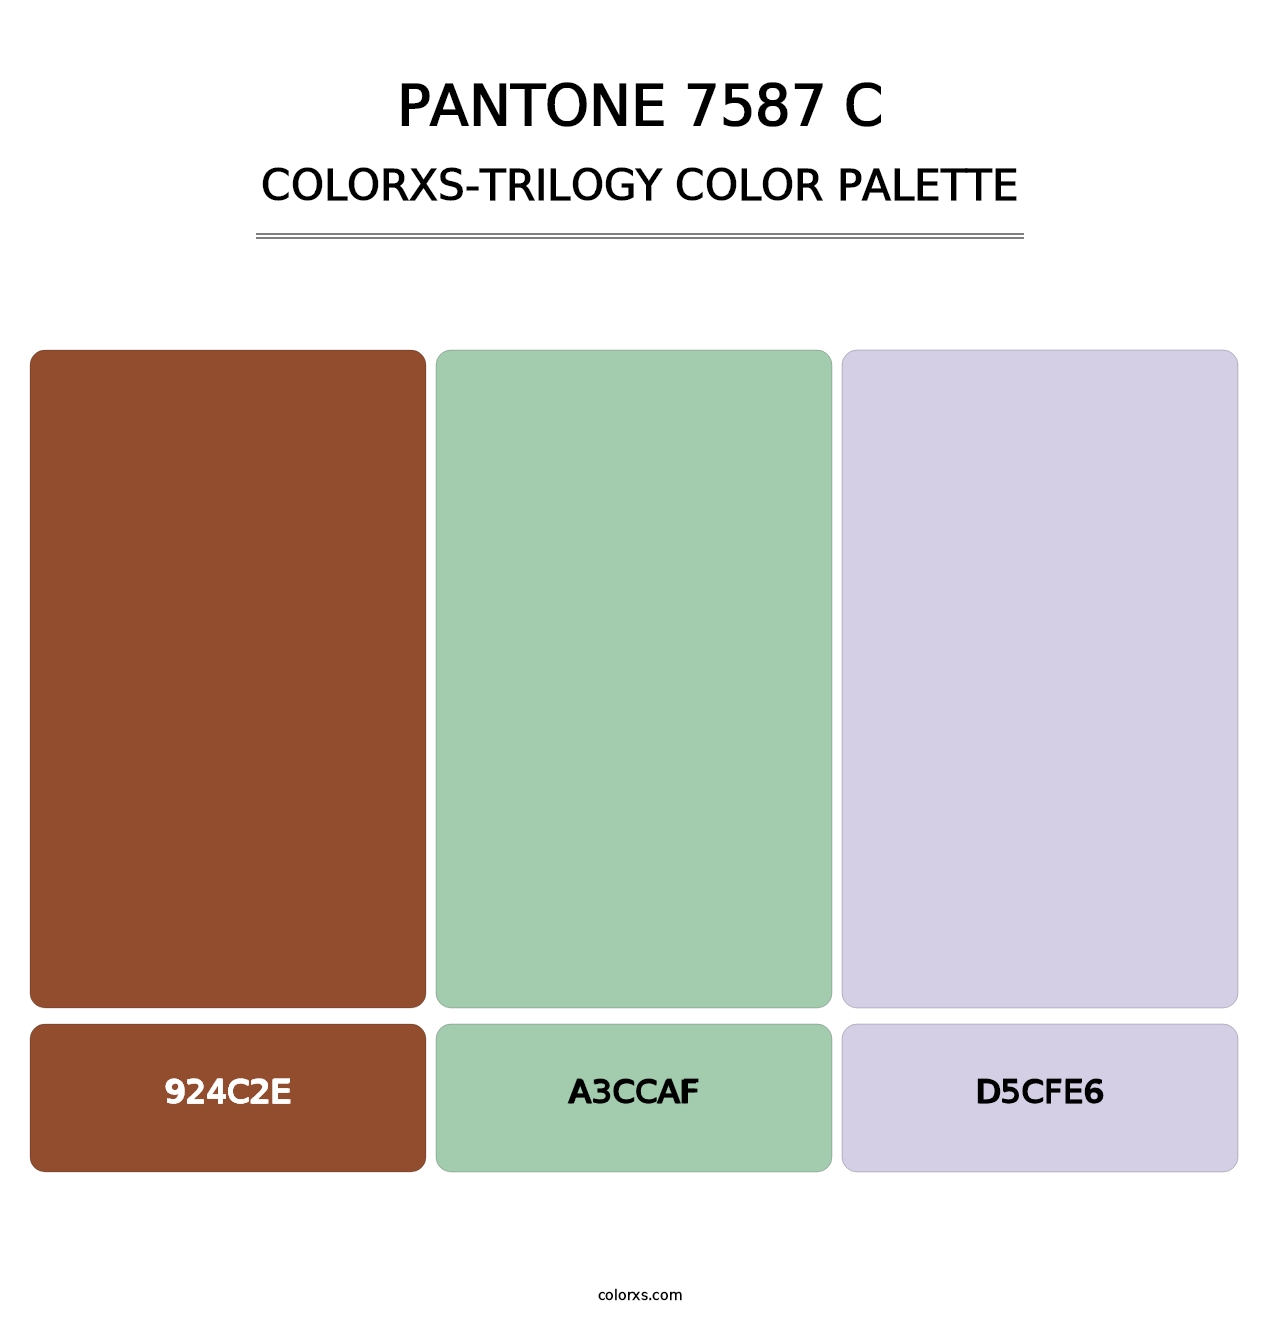 PANTONE 7587 C - Colorxs Trilogy Palette